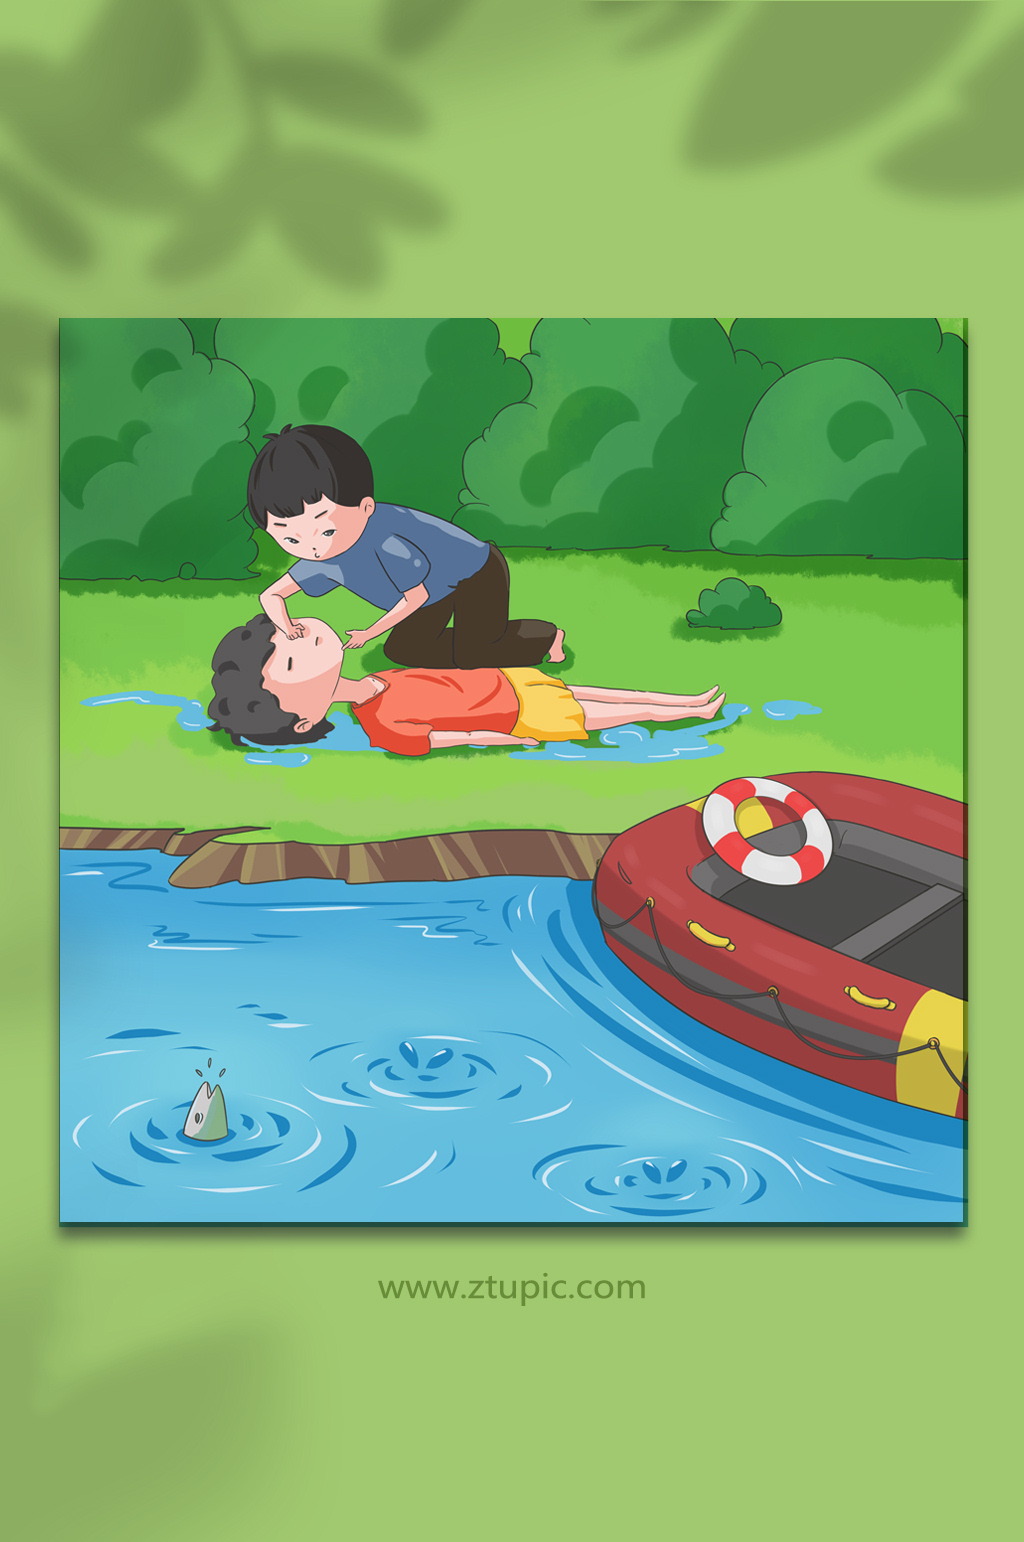 人工呼吸溺水救助夏季预防溺水人物元素插画